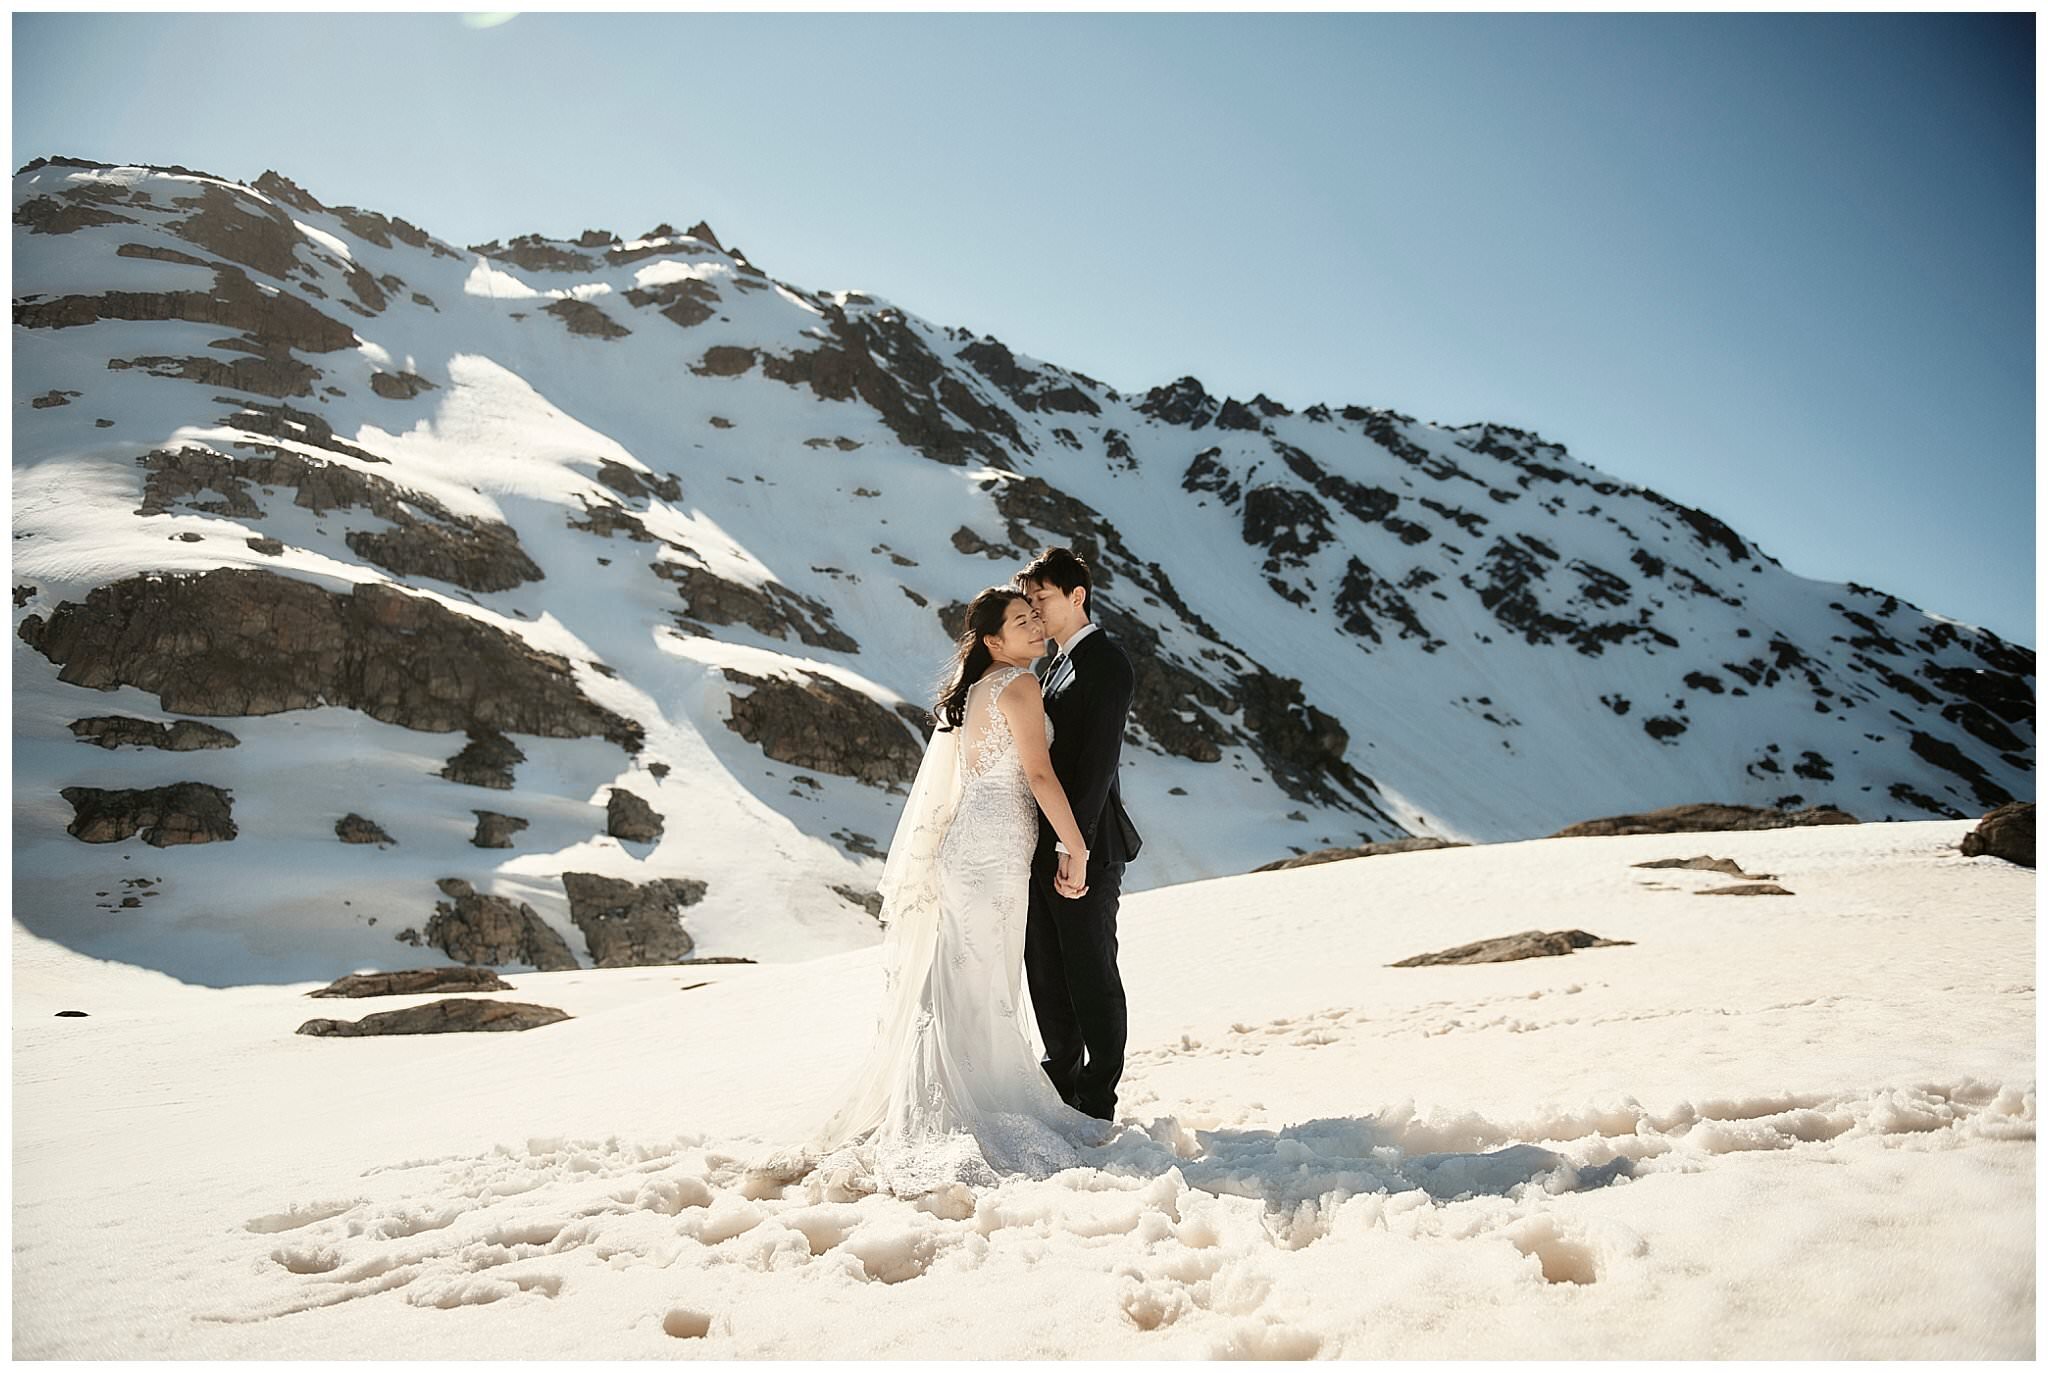 Niklas & Rebecca's Queenstown New Zealand Heli Pre-Wedding Shoot